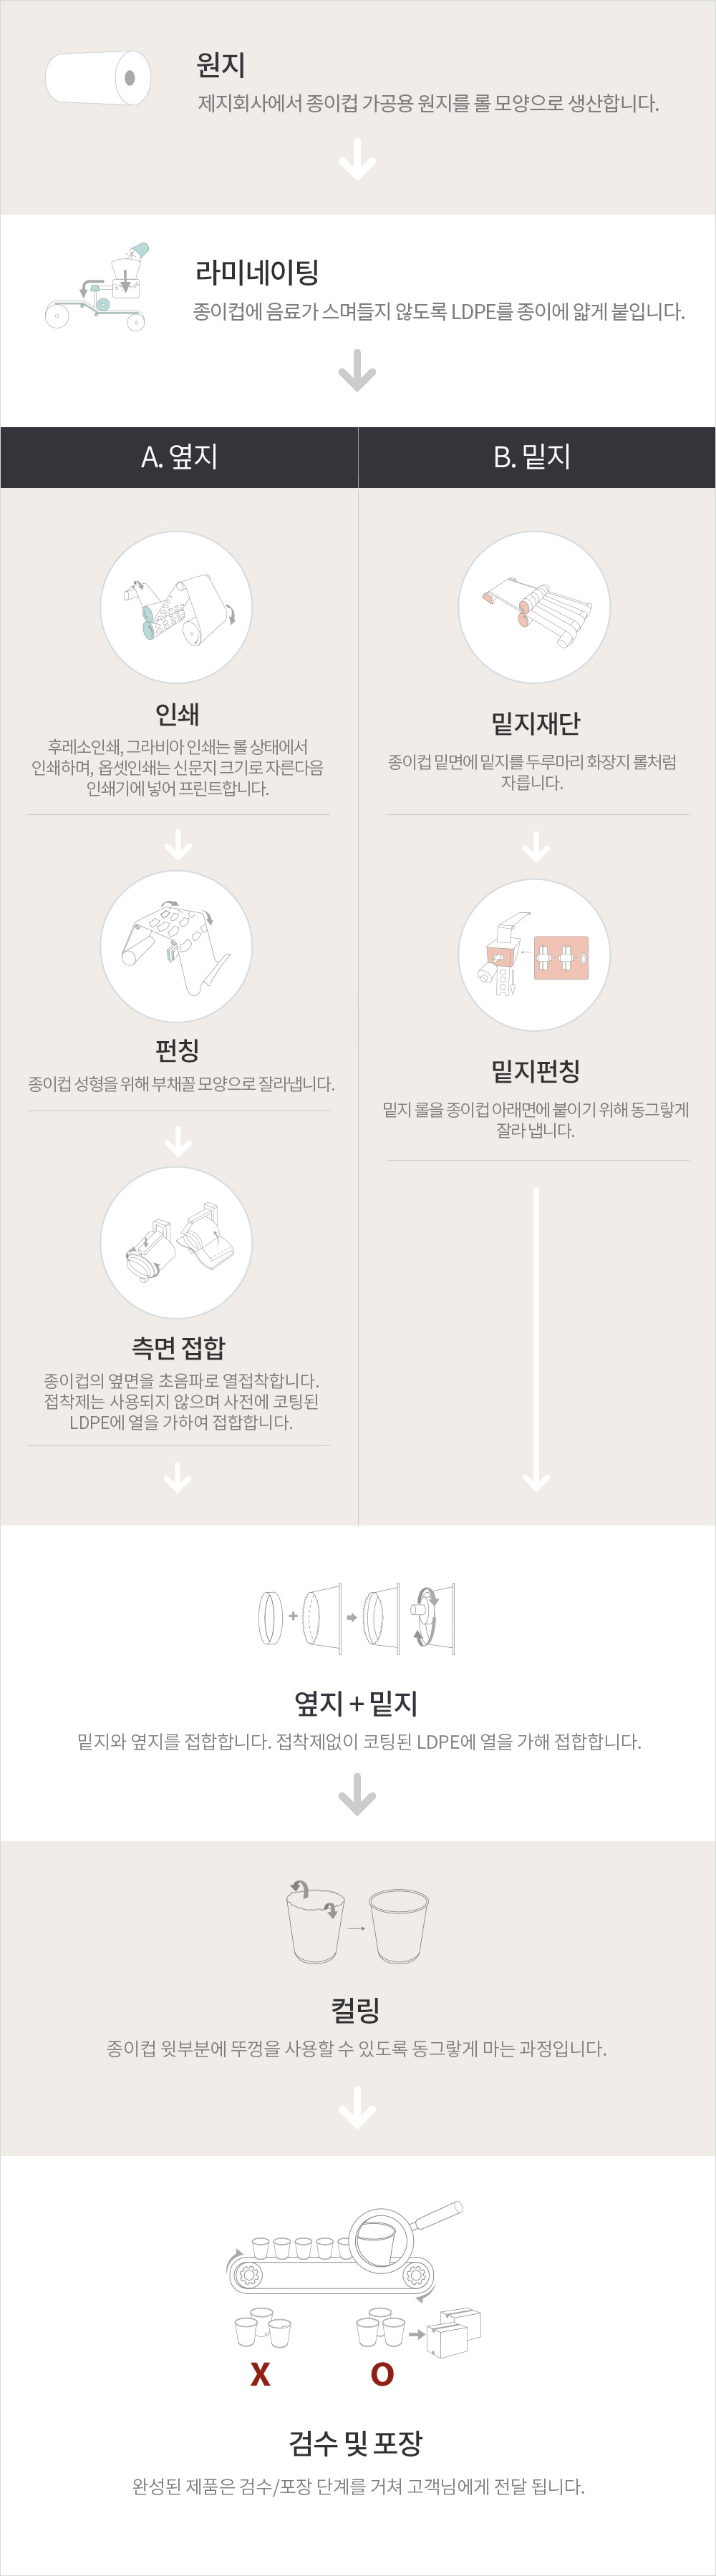 칼라컵 종이컵 생산과정